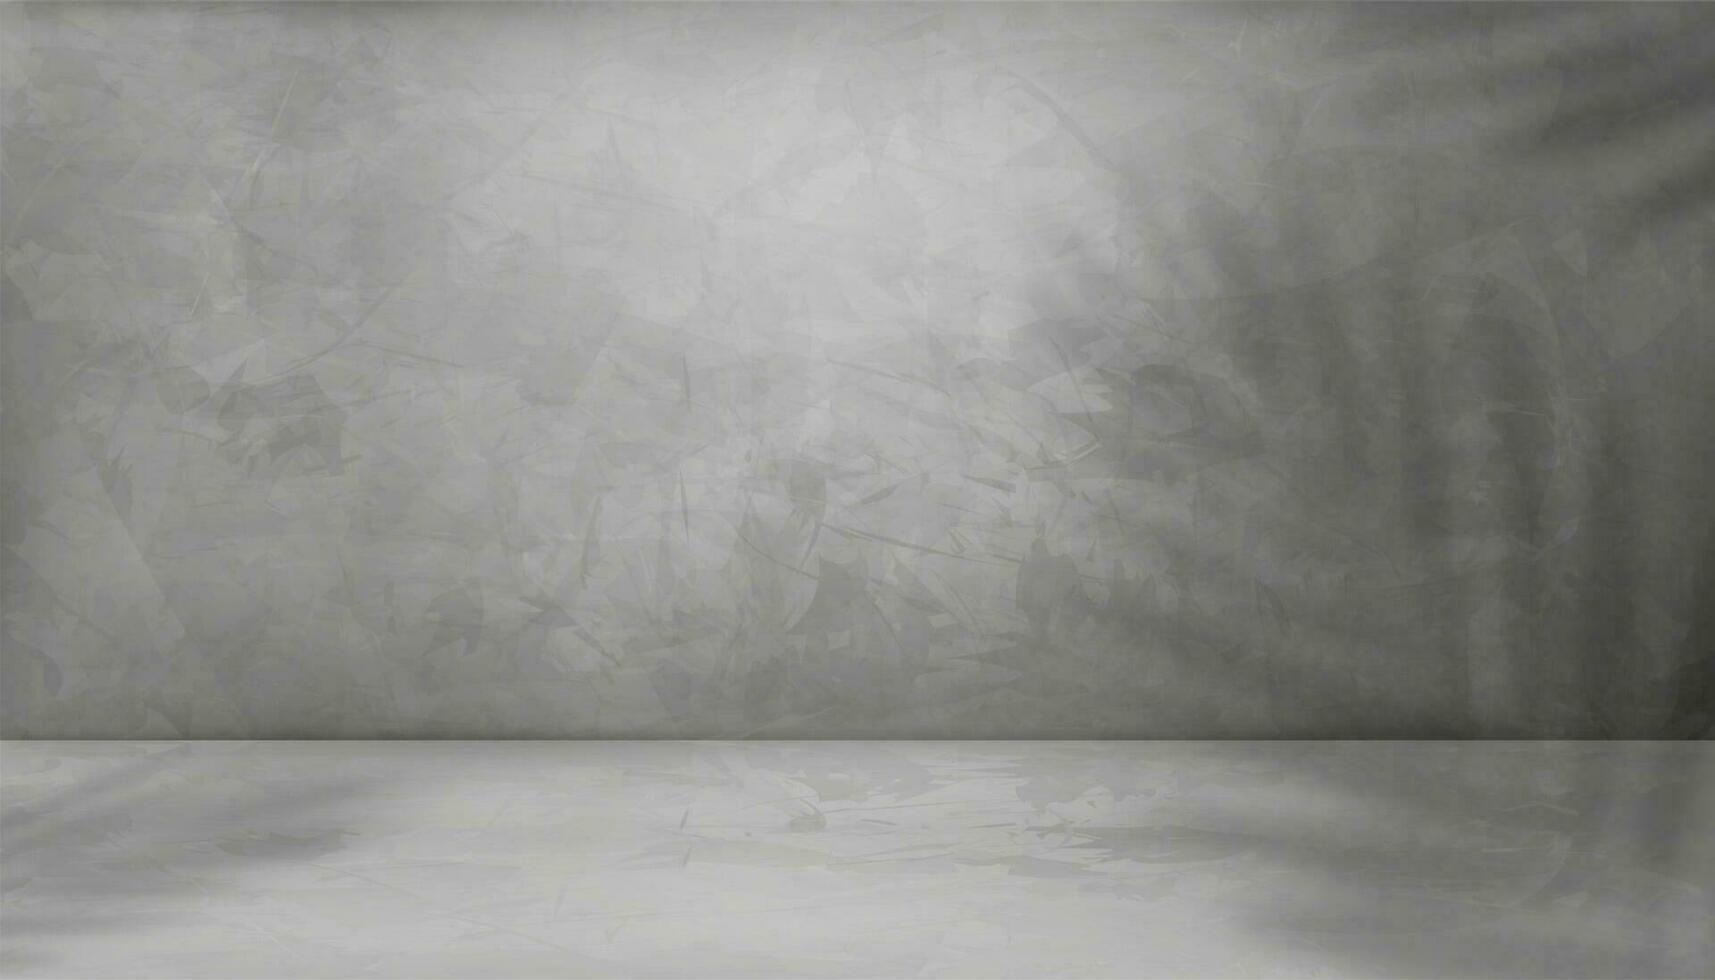 grå cement vägg textur bakgrund med kokos handflatan löv skugga överlägg, 3d tömma studio interiör bakgrund, vektor grå cement vägg med ljus på betong golv, display produkt presentation